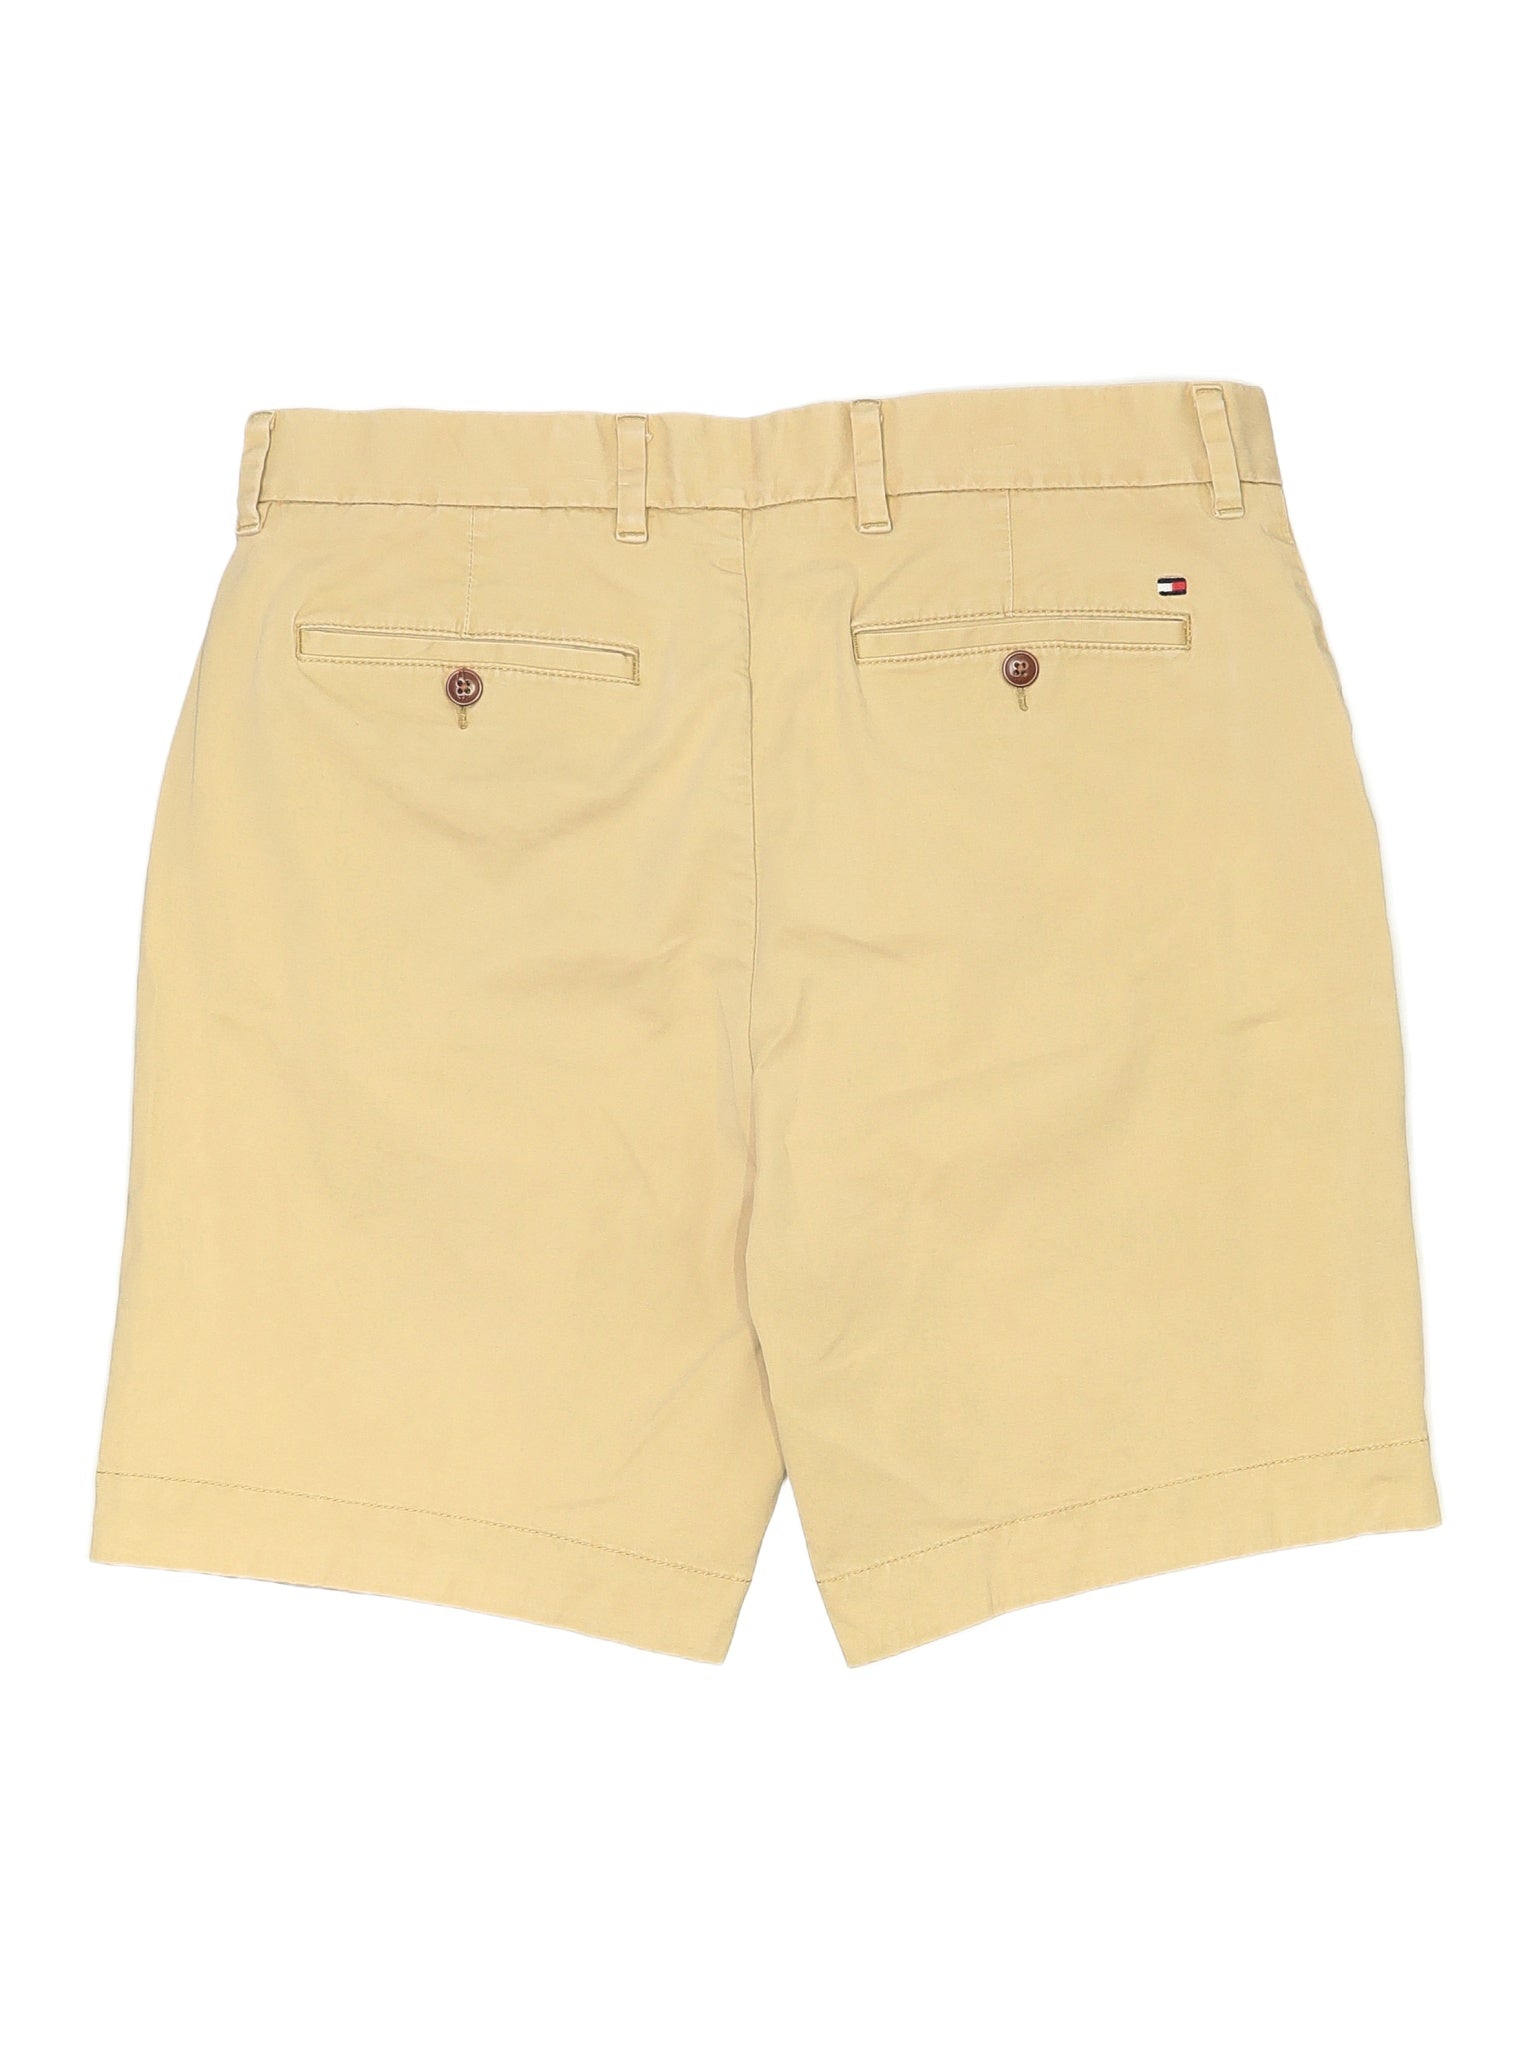 Khaki/Chino Shorts waist size - 34